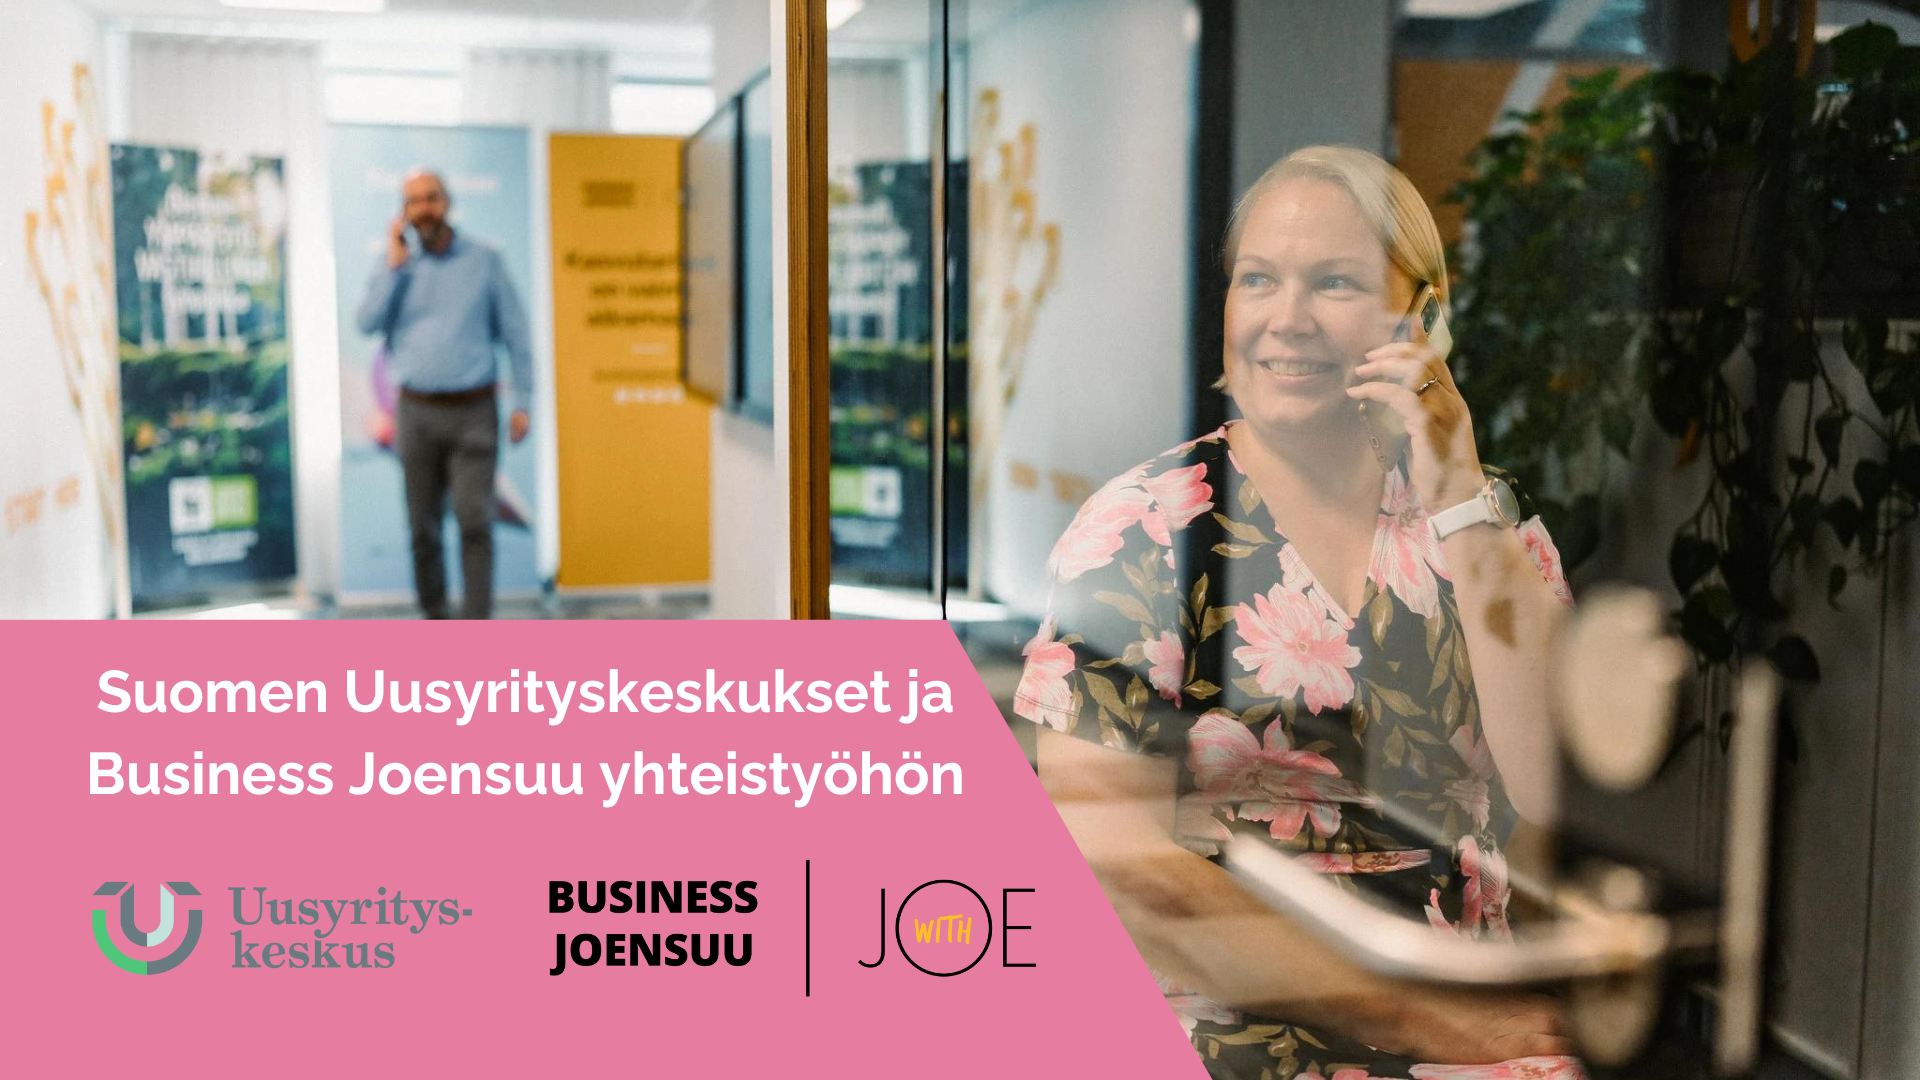 Suomen Uusyrityskeskukset ja Business Joensuu yhteistyohon